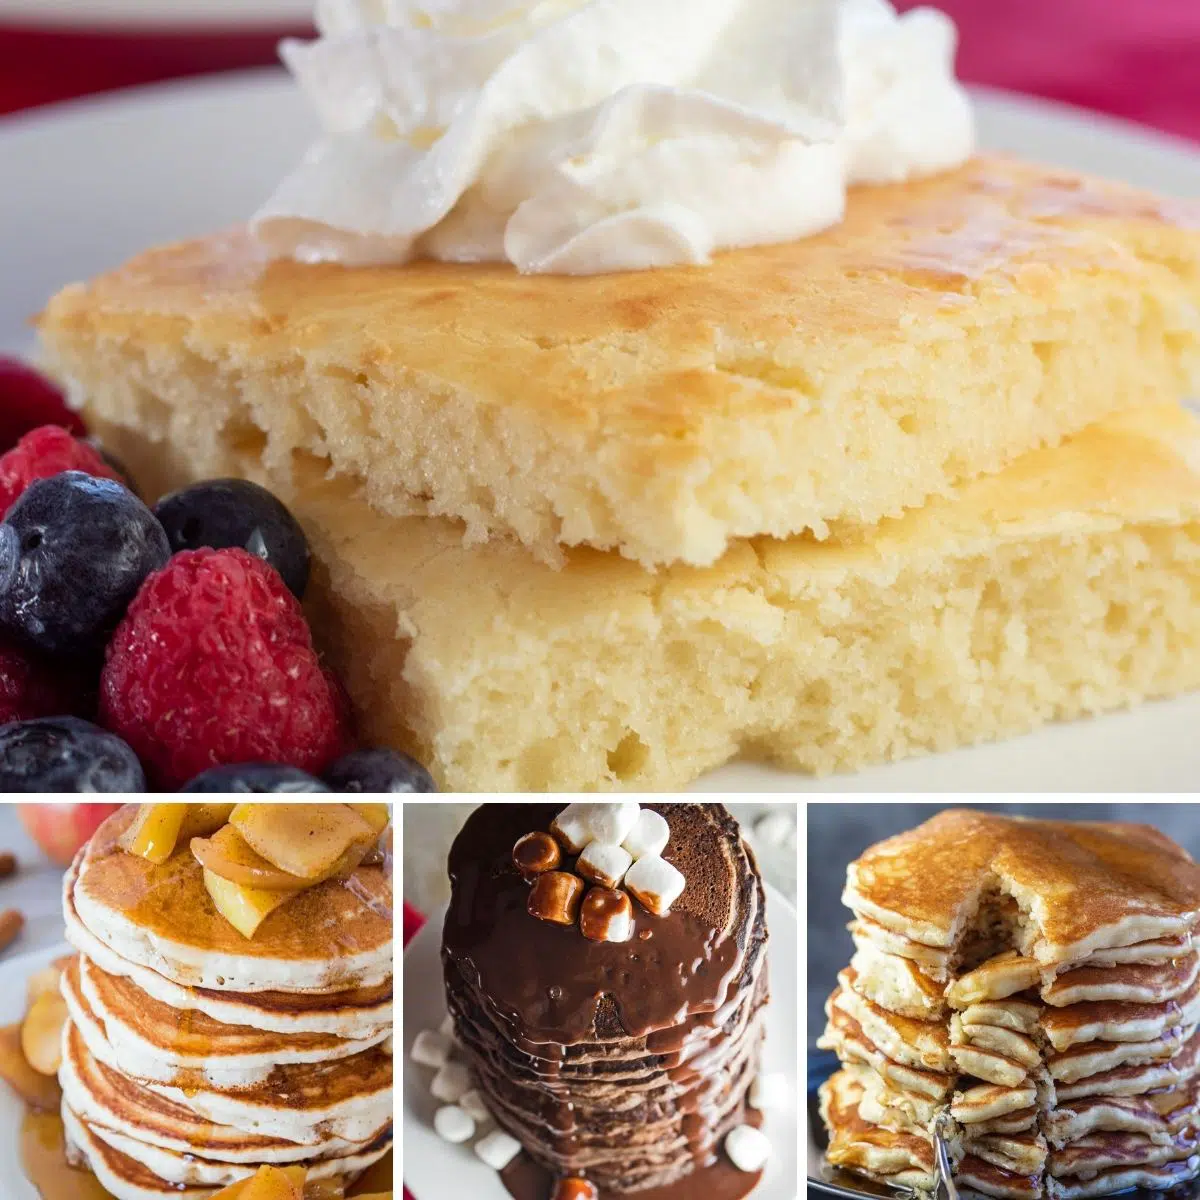 Beste Pfannkuchenrezepte Collagenbild von 4 Rezepten, die wir für ein fantastisches Wochenendfrühstück teilen.